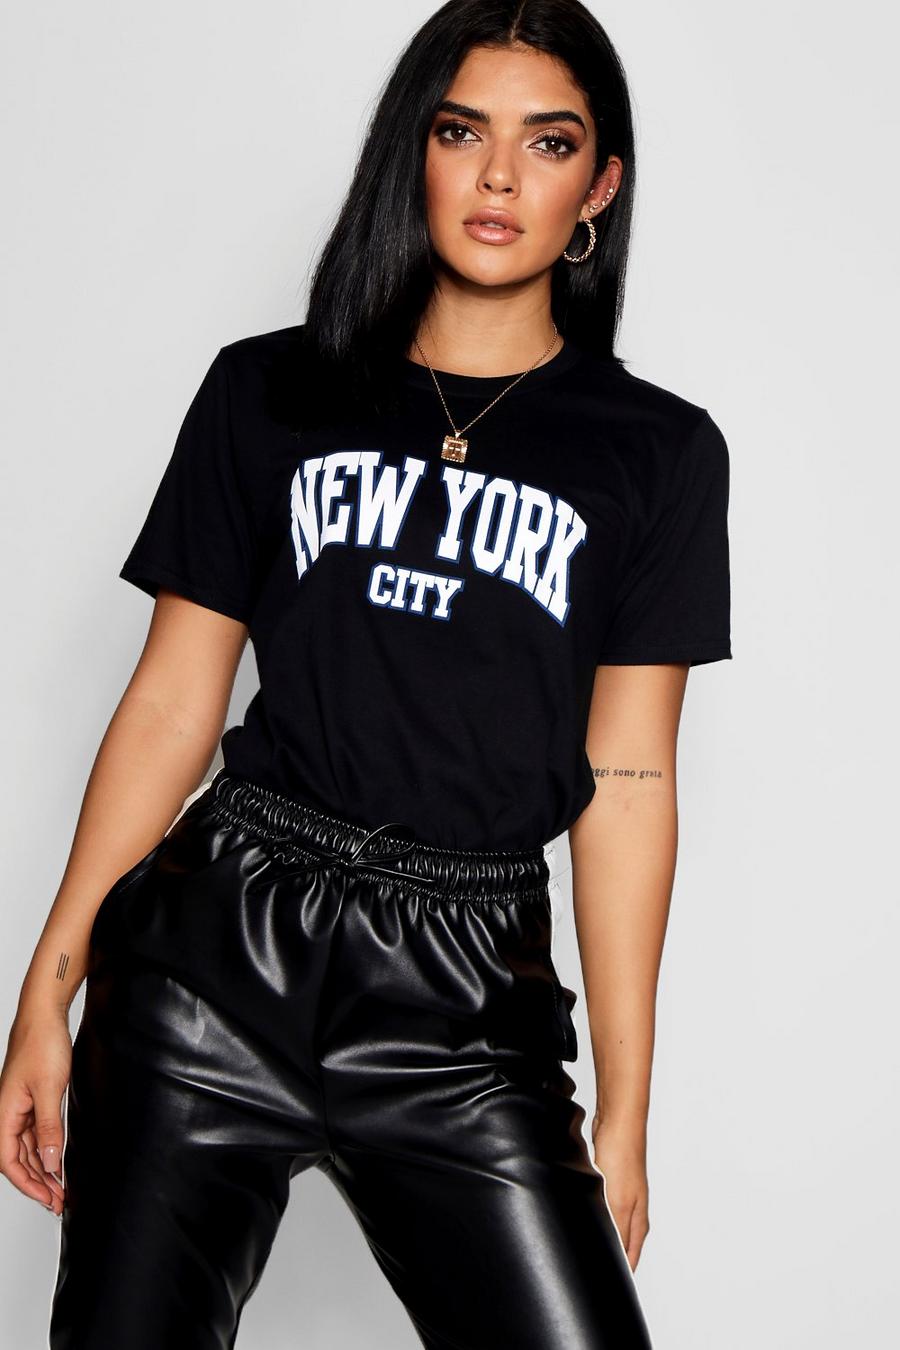 Camiseta con eslogan “New York City” image number 1